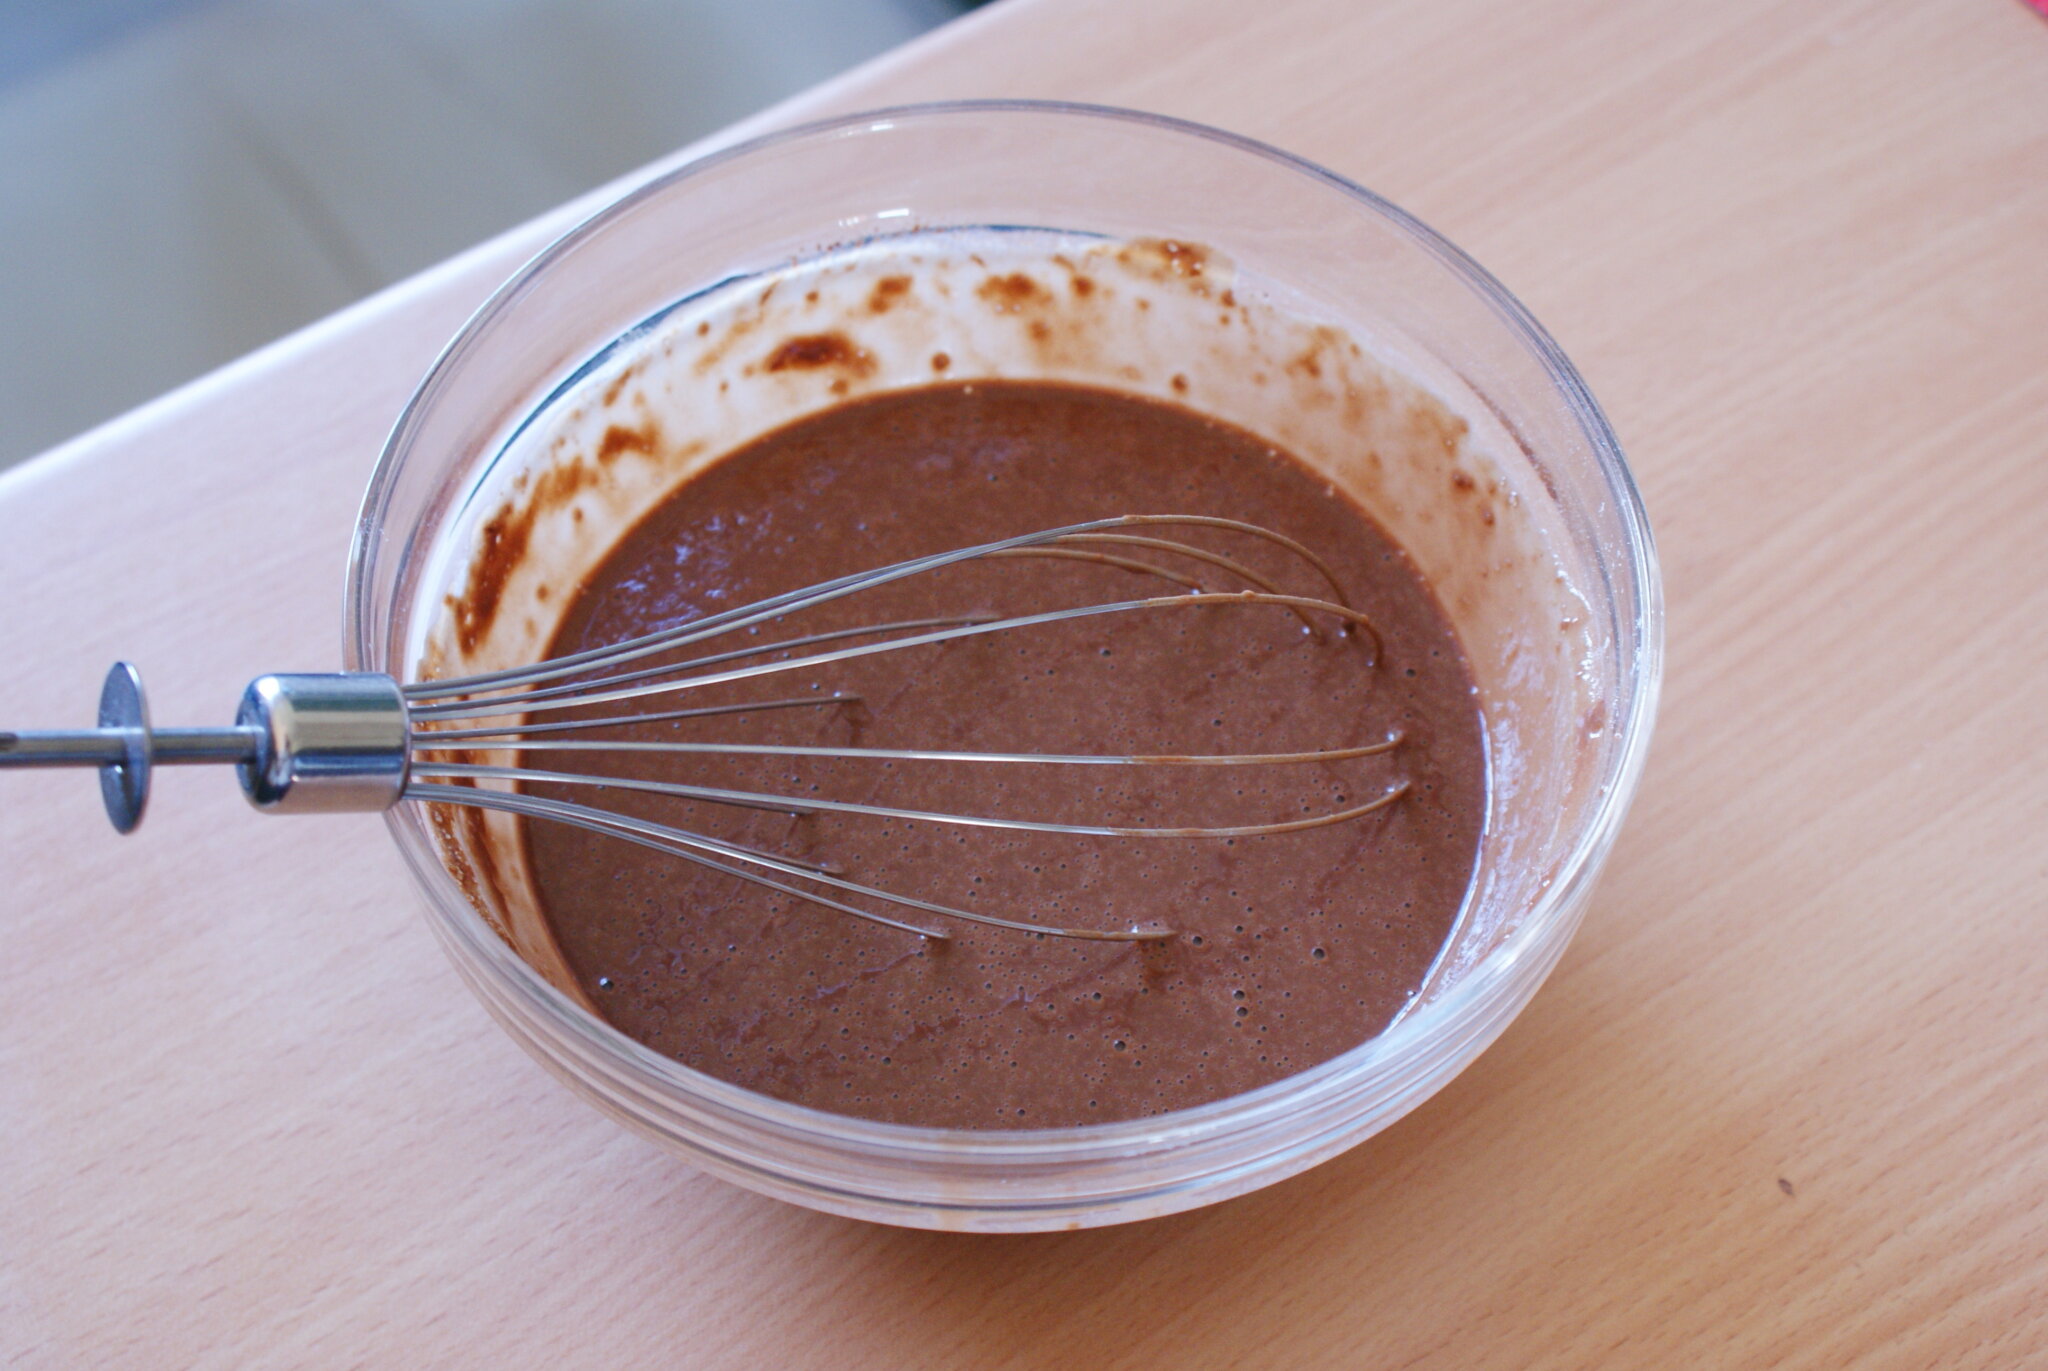 10 ten minute chocolate cake microwave recipe easy simple few ingredients ultimate last minute